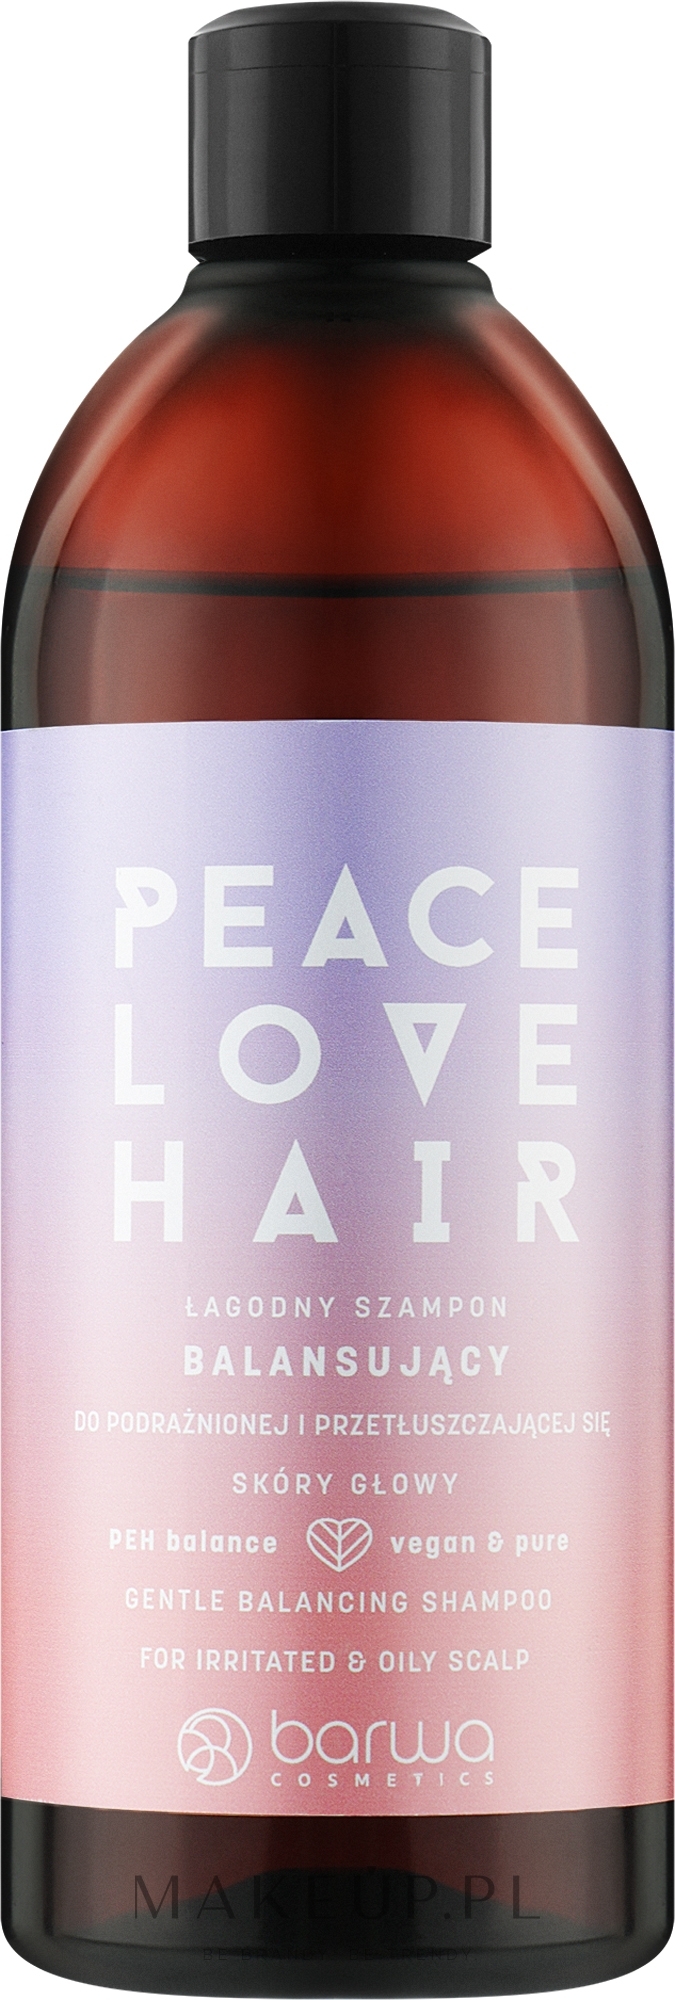 Delikatnie równoważący szampon do podrażnionej i przetłuszczającej się skóry głowy - Barwa Peace Love Hair — Zdjęcie 480 ml